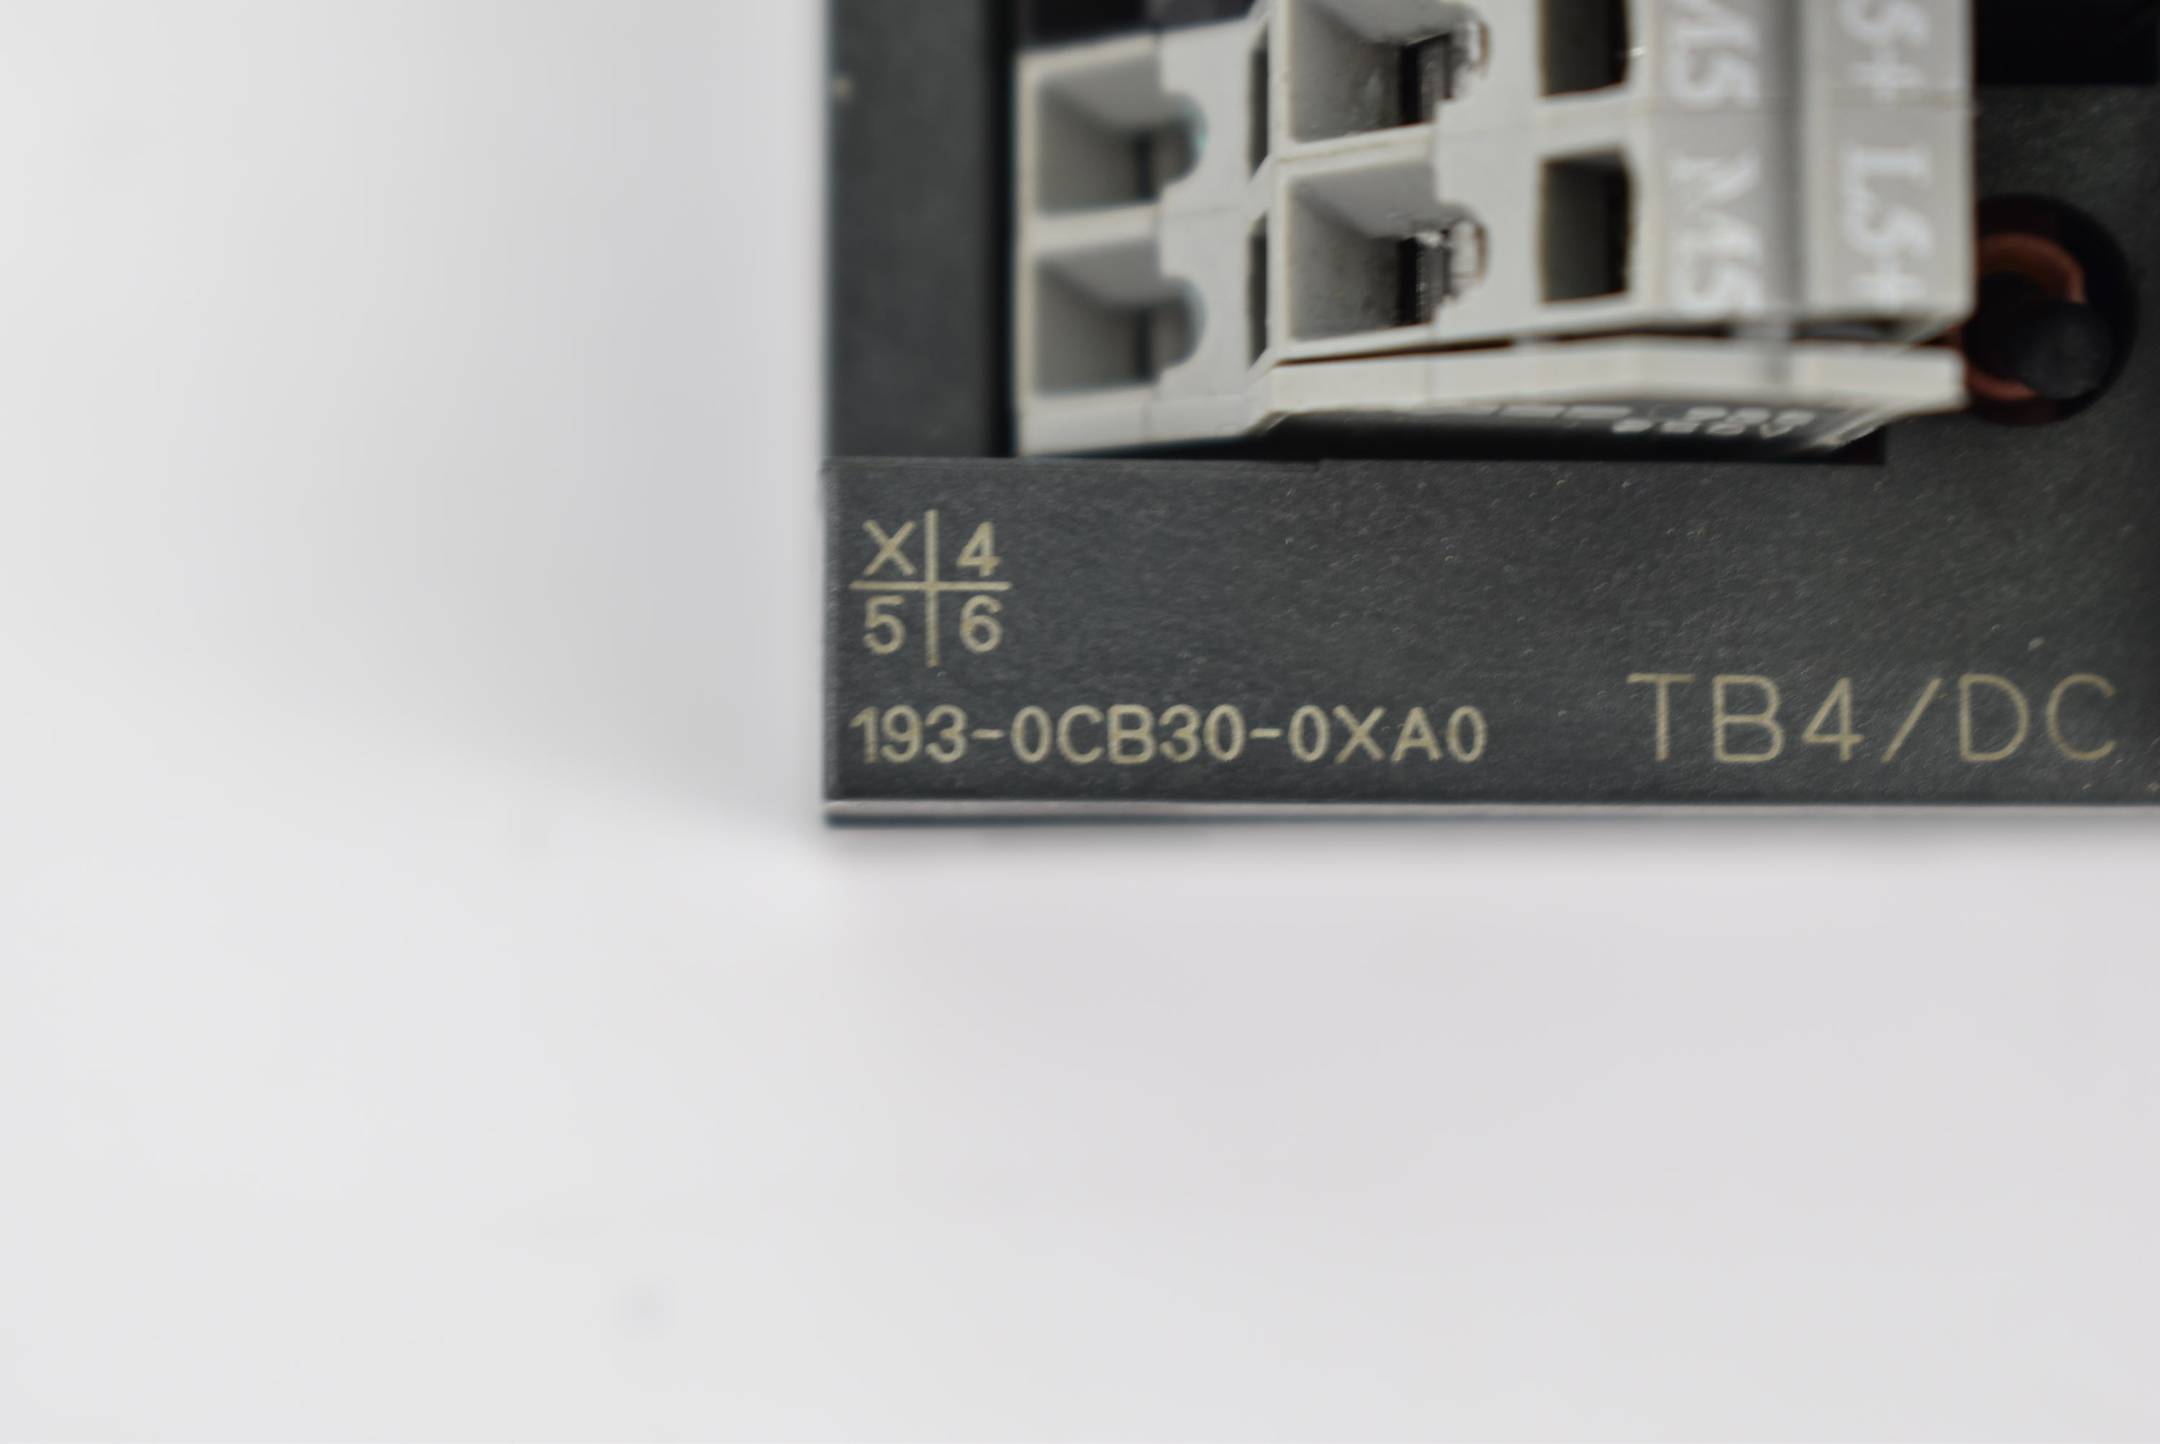 Siemens ET 200B 6ES7133-0BL00-0XB0 inkl. Terminalblock TB4/DC 6ES7193-0CB30-0XA0